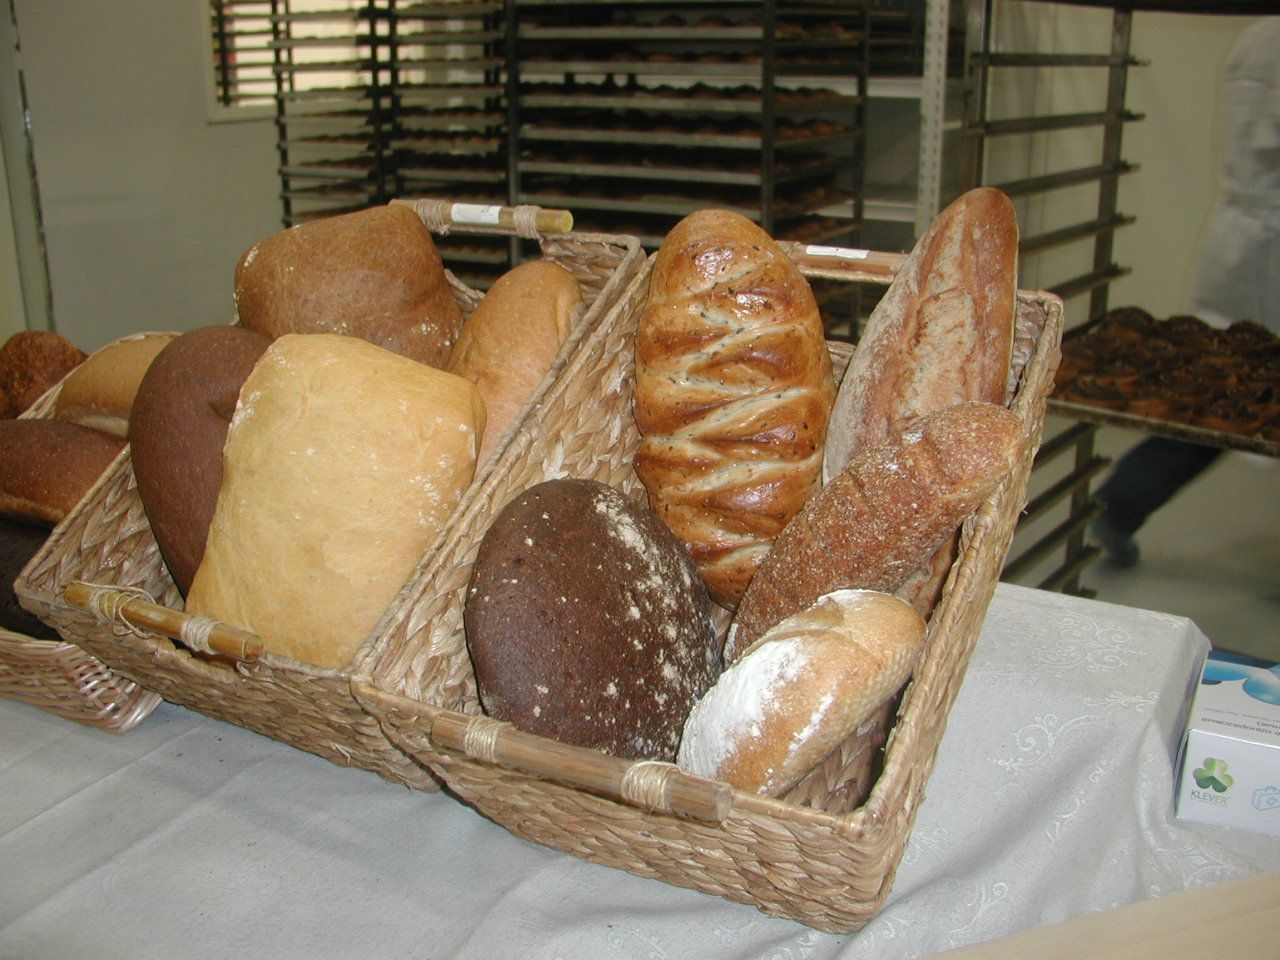 Uusi leipomo tuottaa tavallisia leipiä, pullia ja piirakoita. Niitä myydään Belomorskin ja Kemin piireissä. Kuva: Karjalan Sanomat